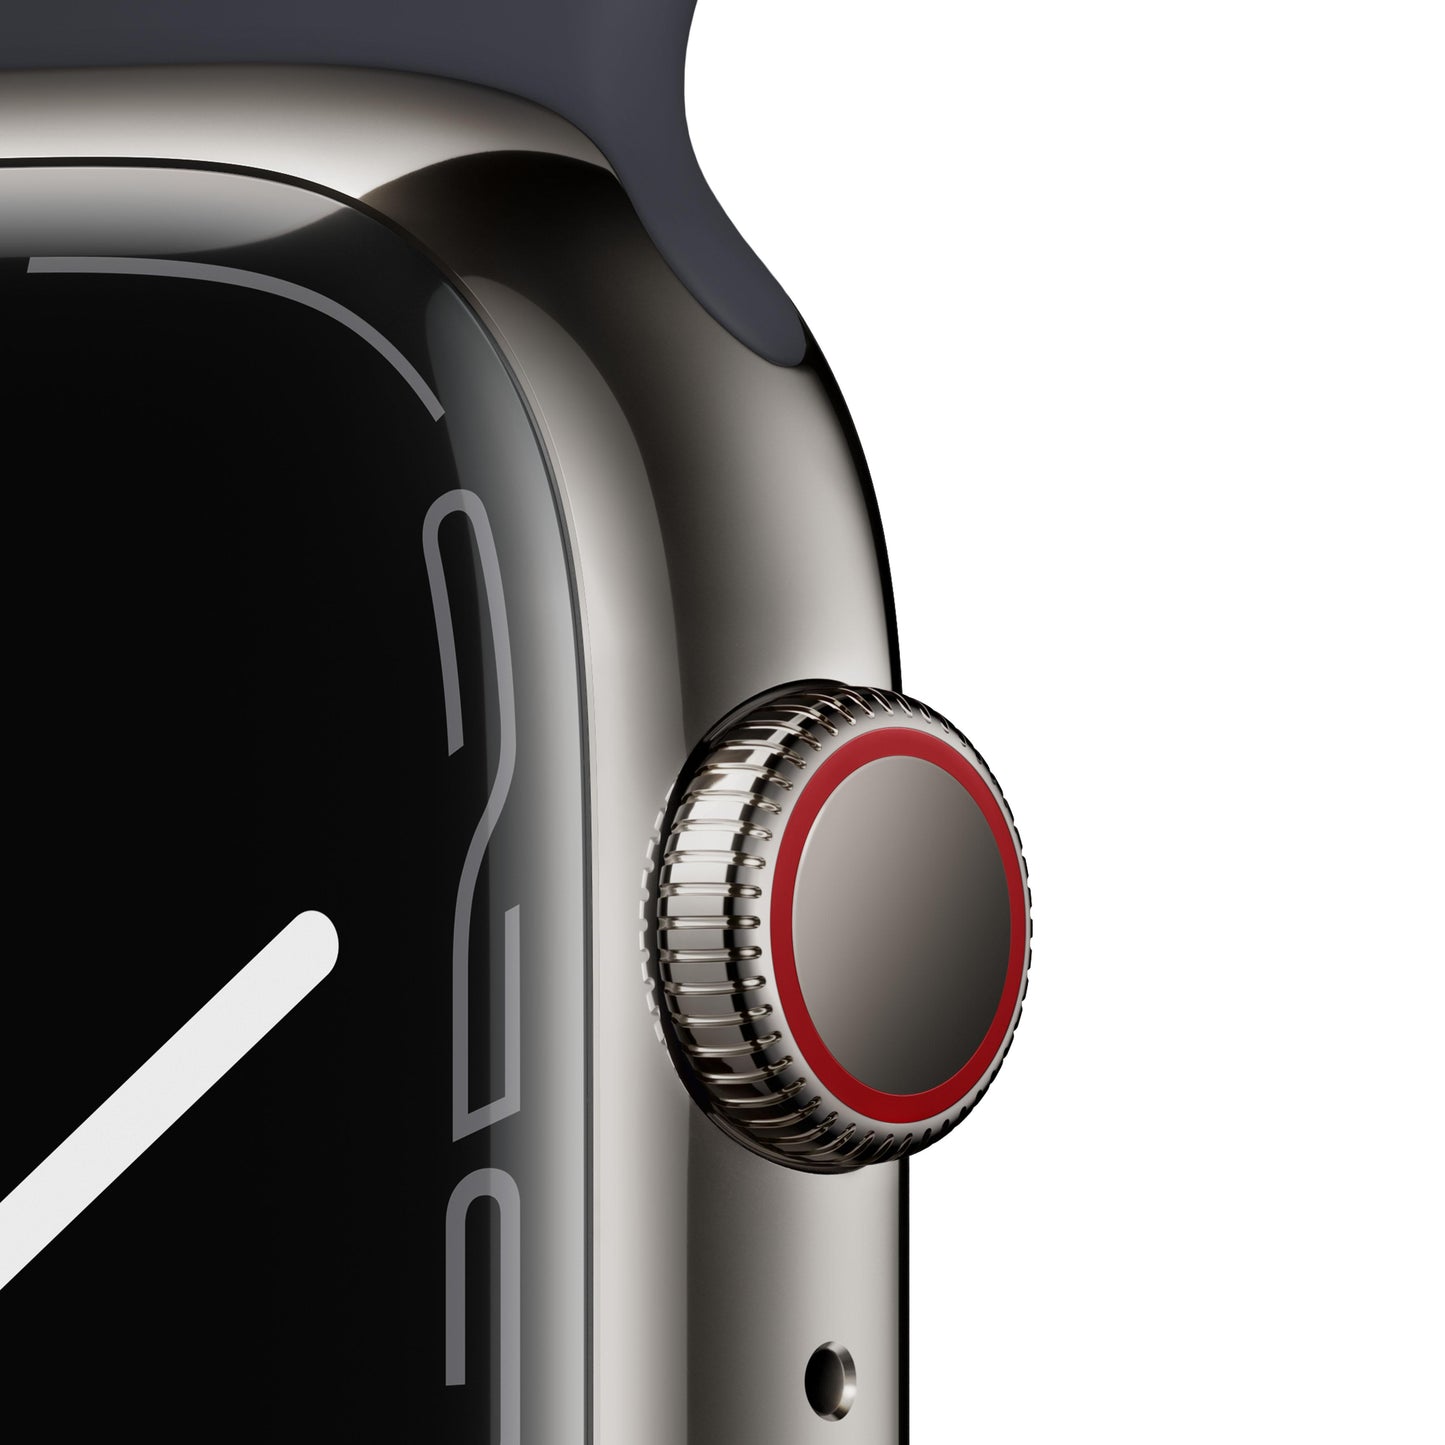 Apple Watch Series 7 (GPS + Cellular) - Caja de acero inoxidable en grafito de 45 mm - Correa deportiva en color medianoche - Talla única